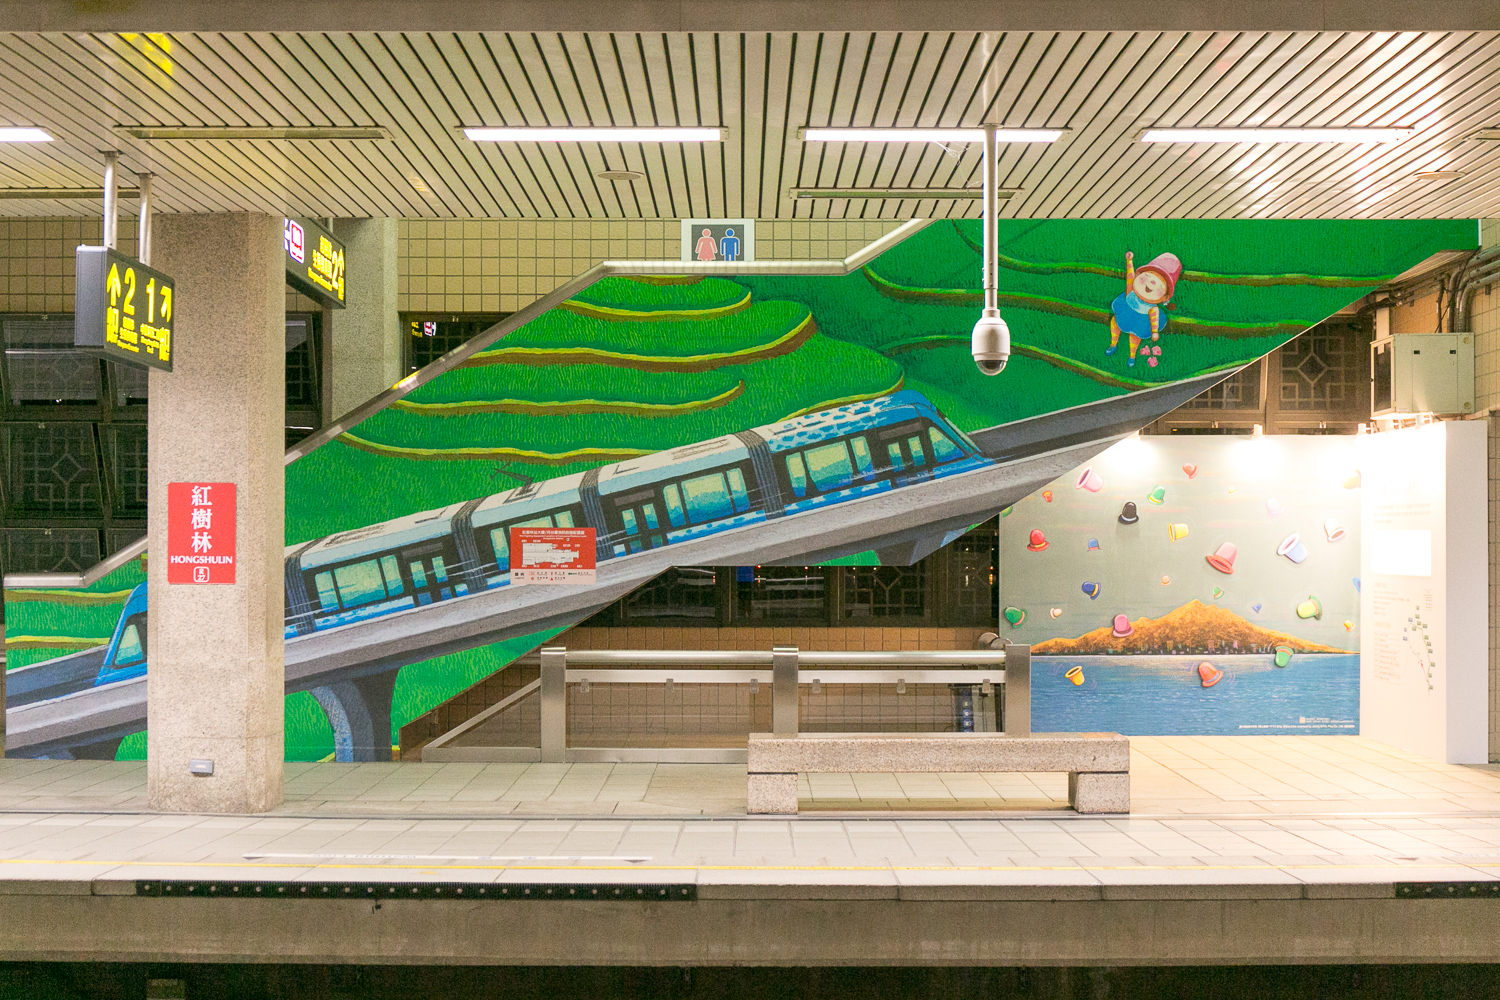 淡海輕軌幾米公共藝術展7月15日至8月31日在捷運紅樹林站開展